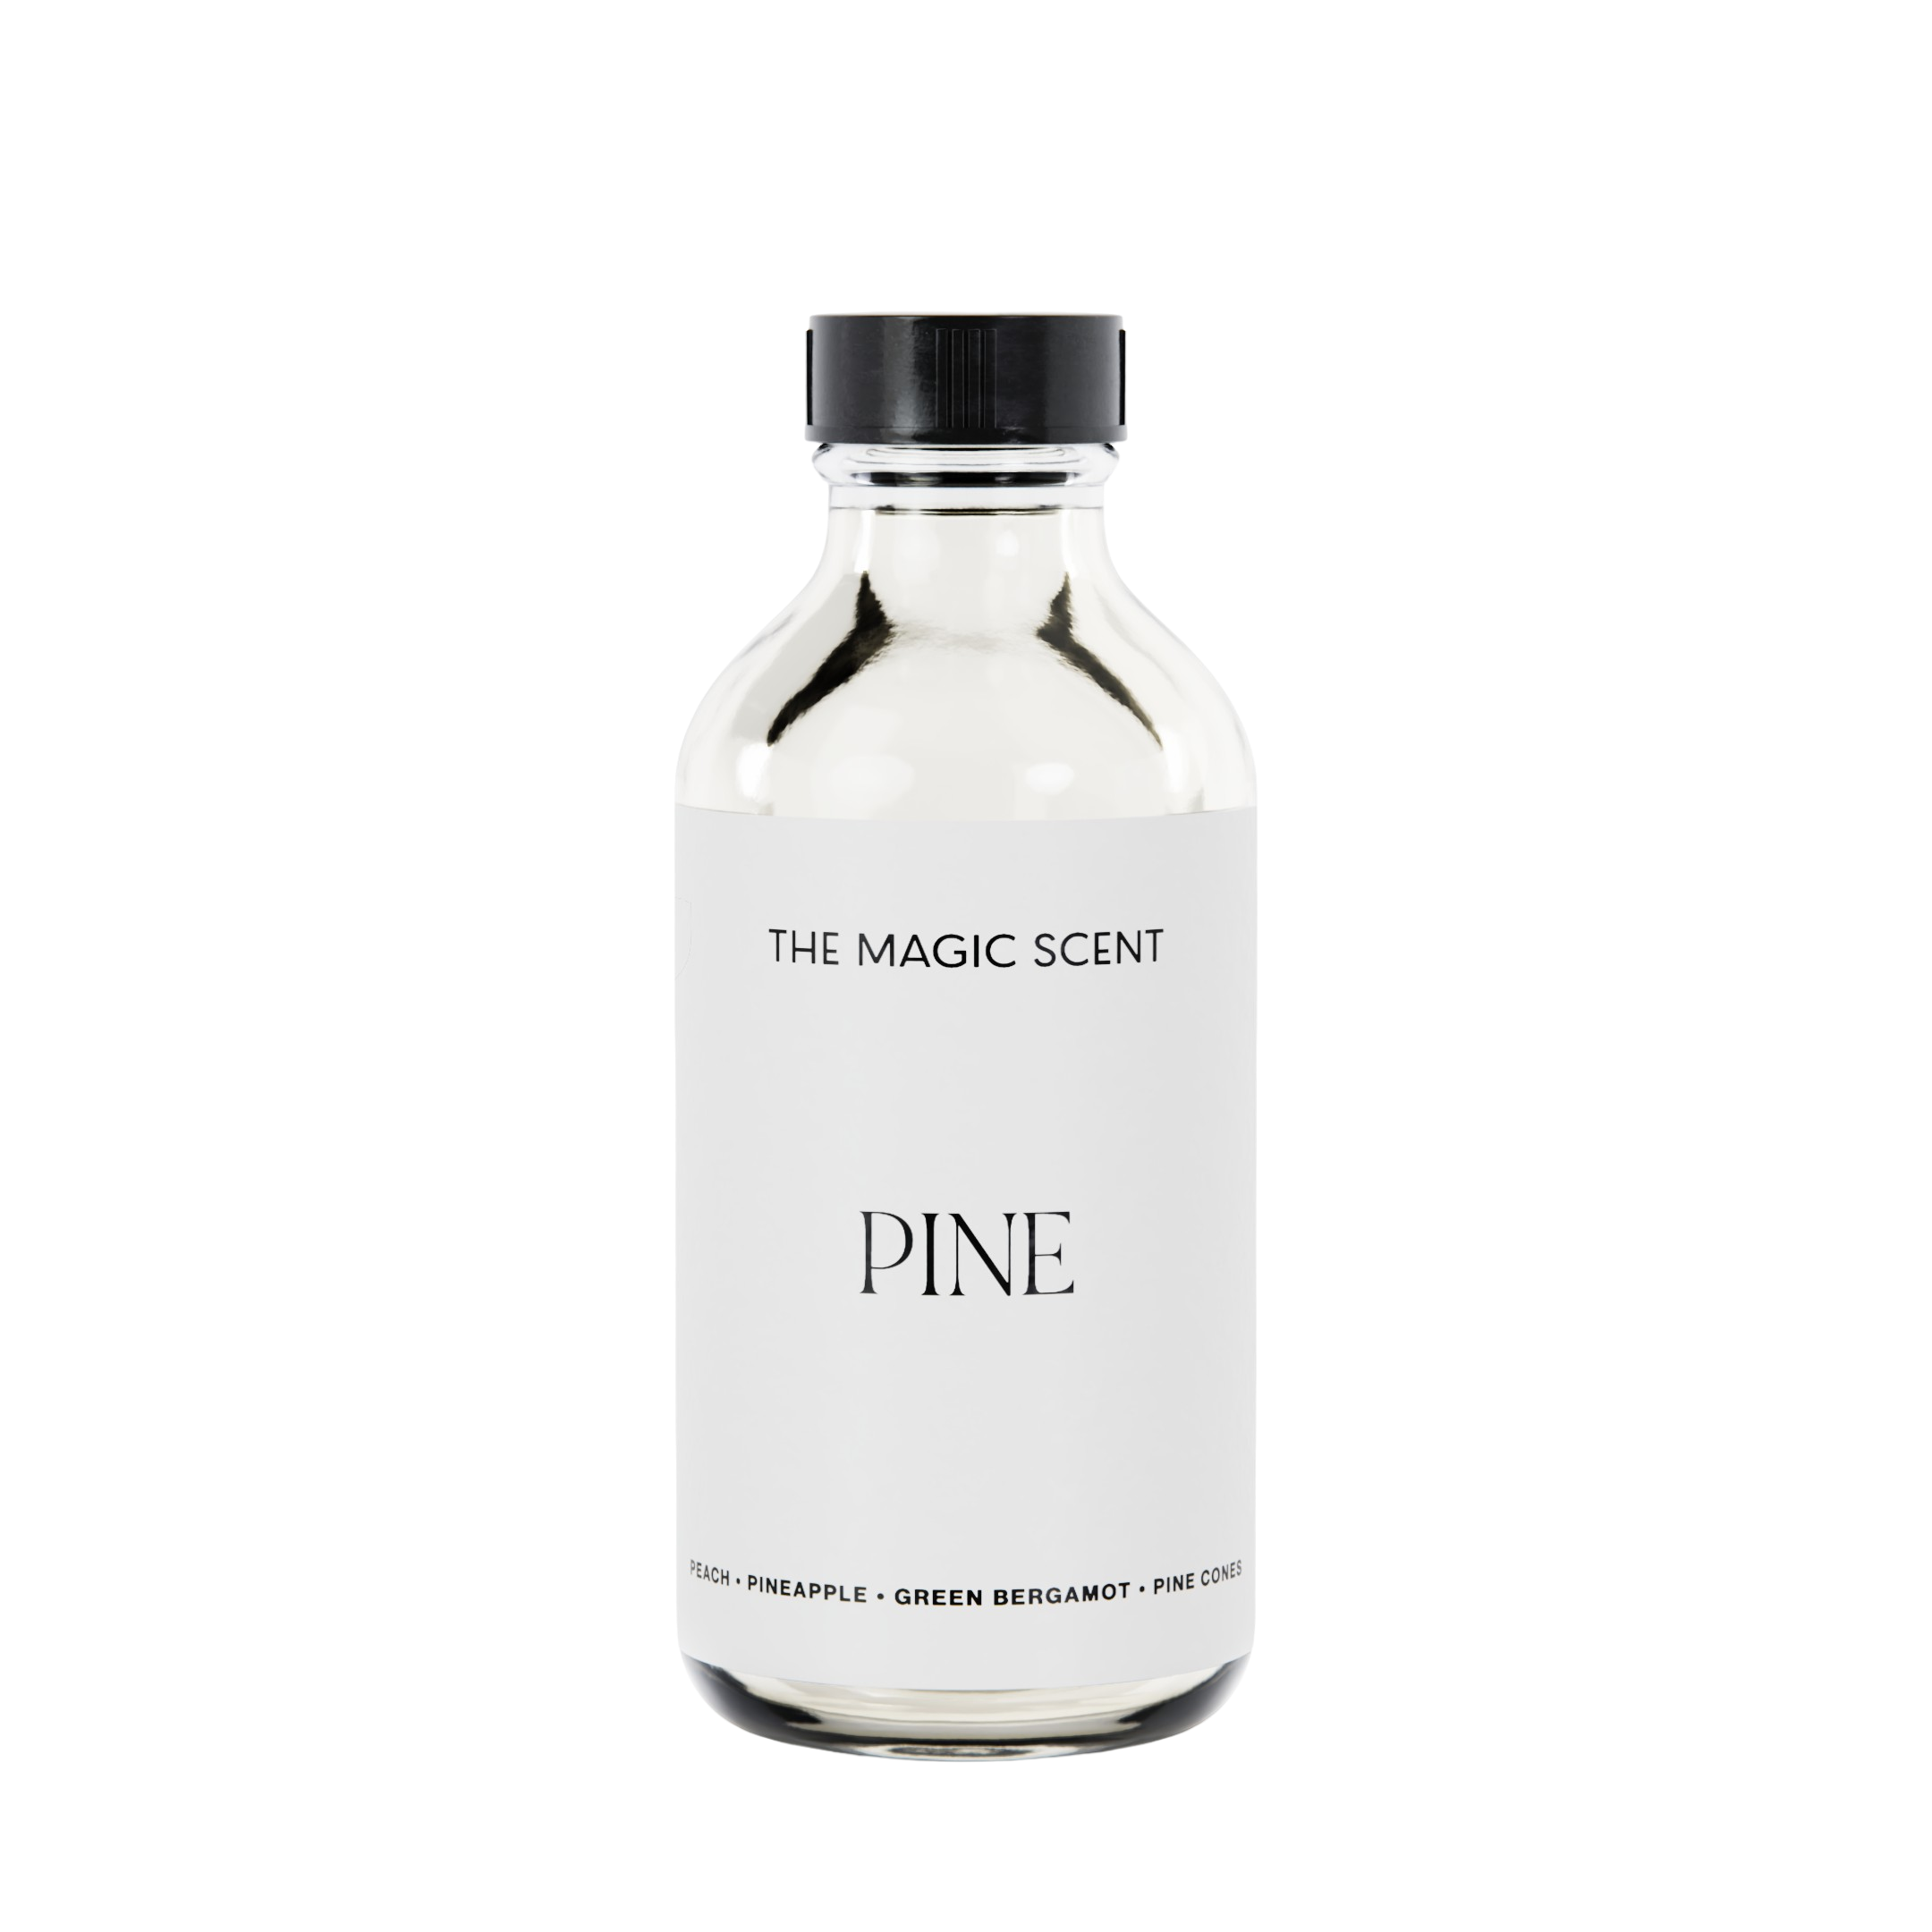 Pine Diffuser Oil